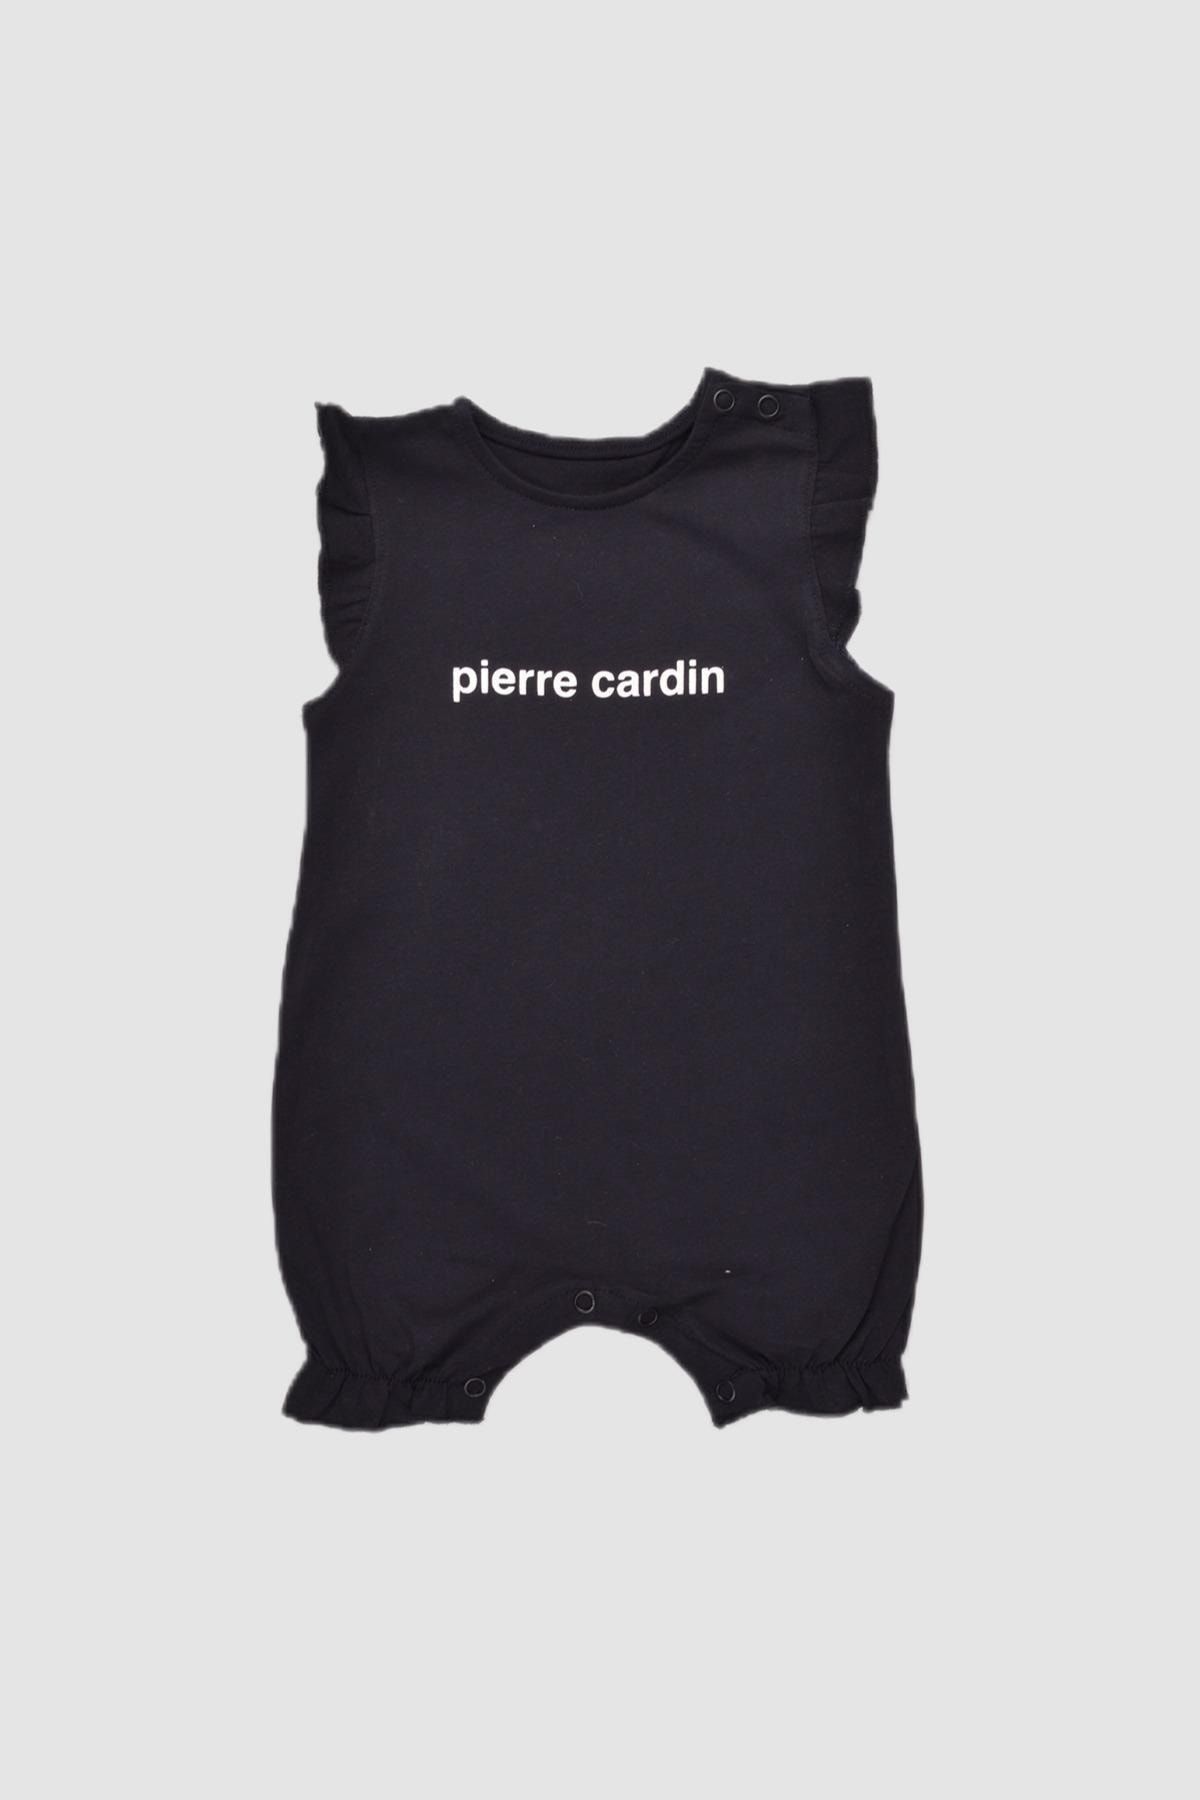 Pierre Cardin %100 Pamuk Baskılı Bebek Kısa Tulum 303399